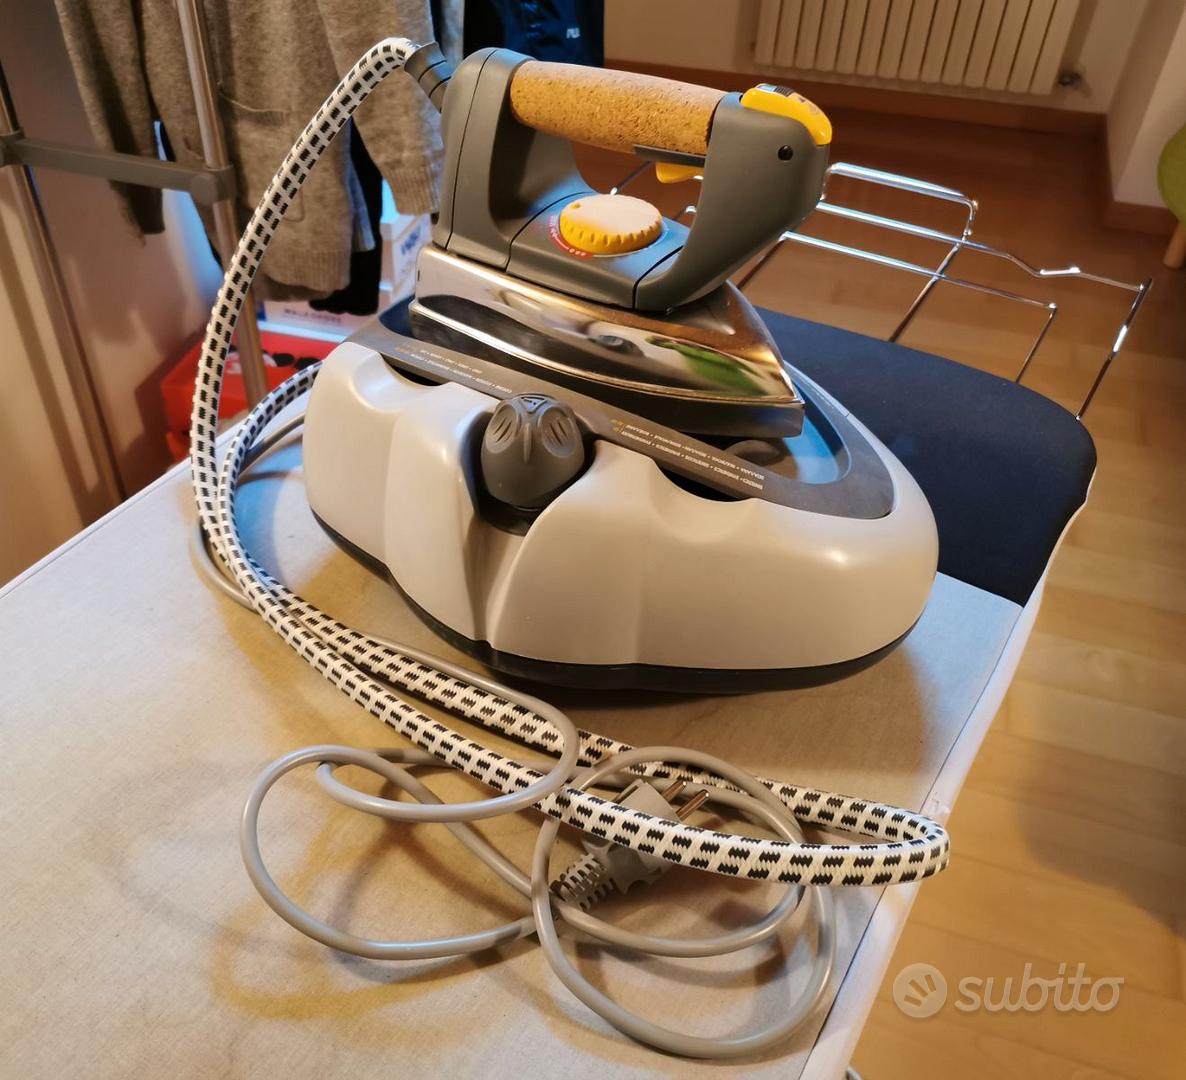 Ferro da stiro con caldaia Ariete Stiromatic 3600 - Elettrodomestici In  vendita a Venezia